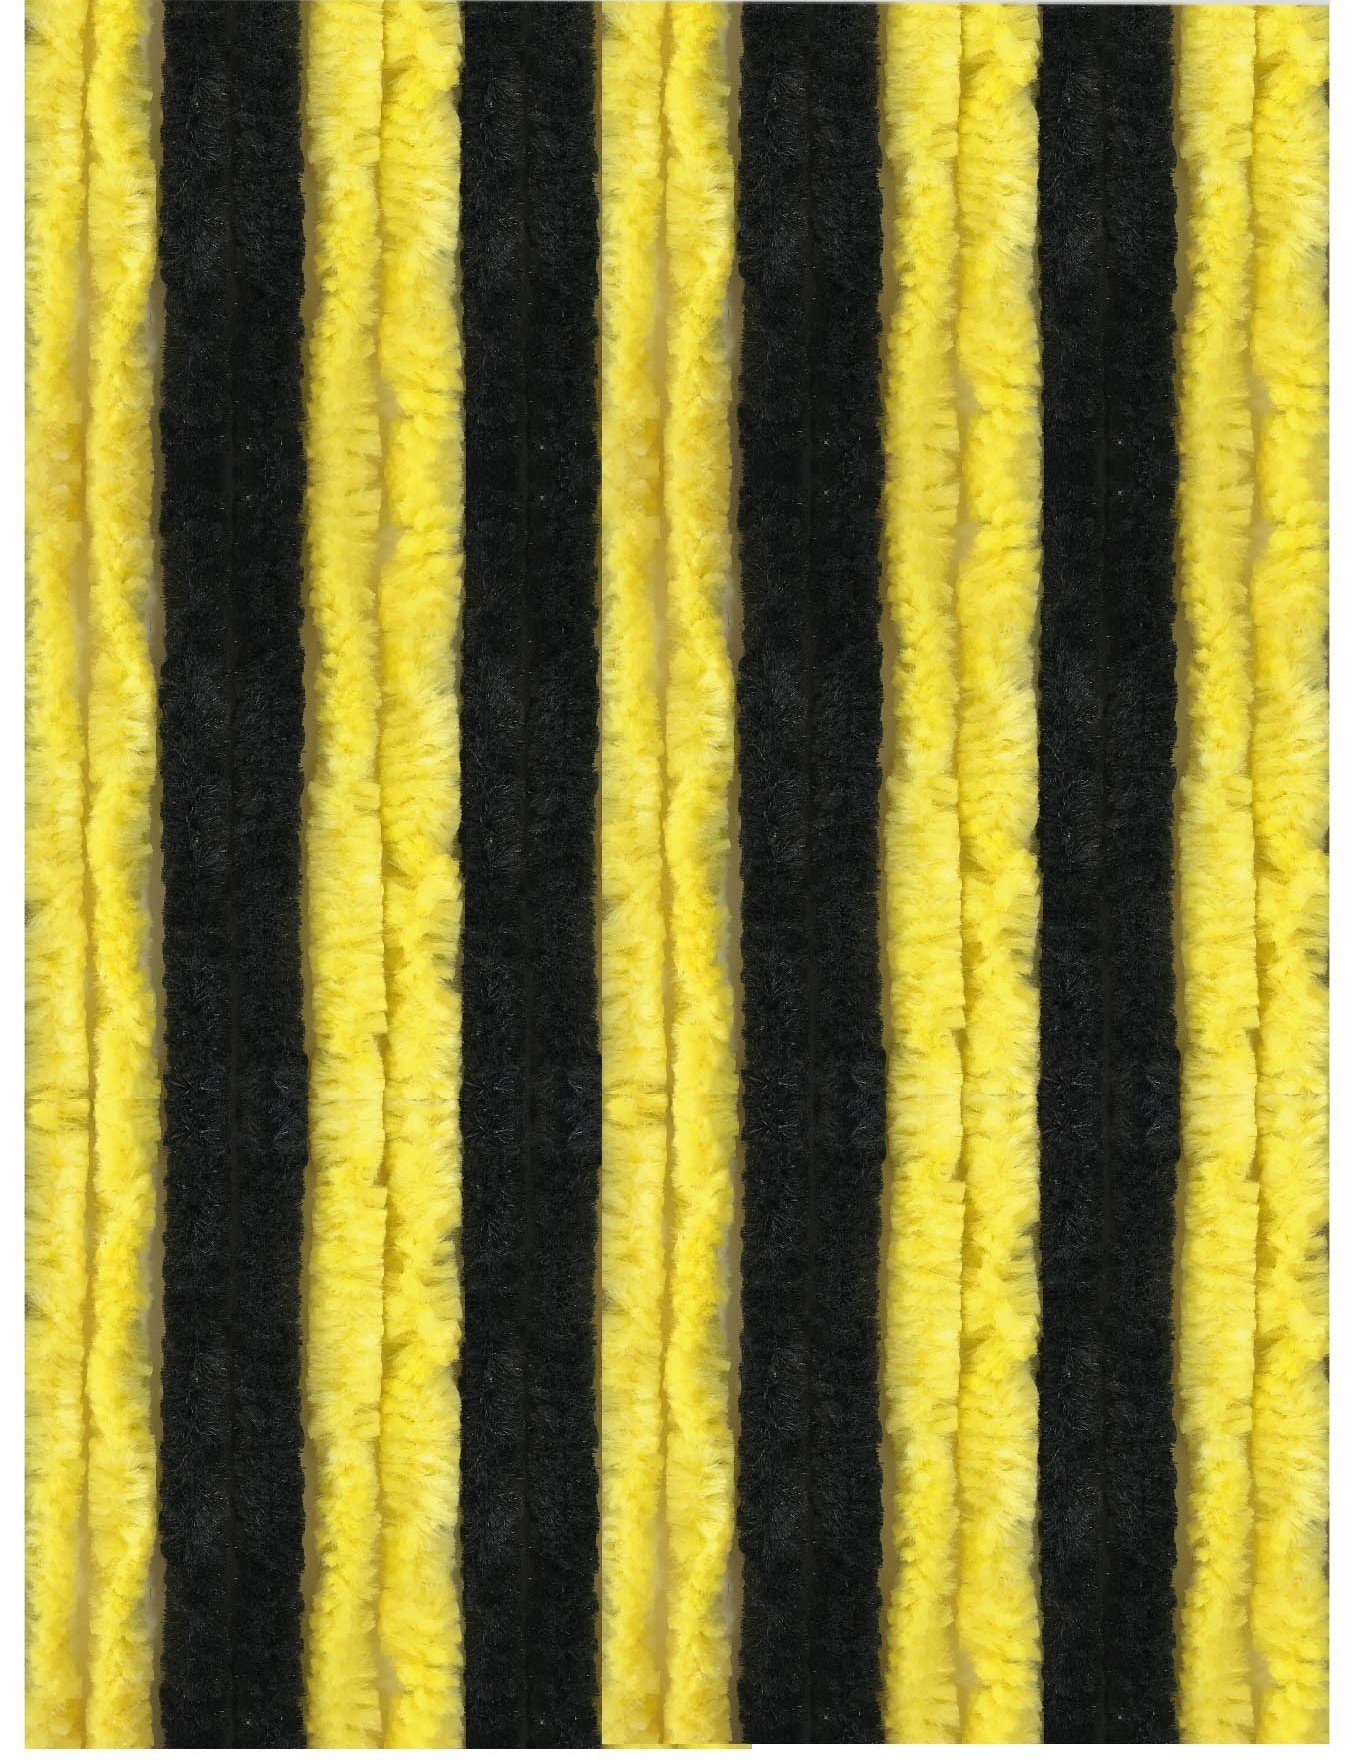 Türvorhang Flauschi, Arsvita, Ösen (1 St), Flauschvorhang 160x185 cm in Unistreifen schwarz - gelb, viele Farben